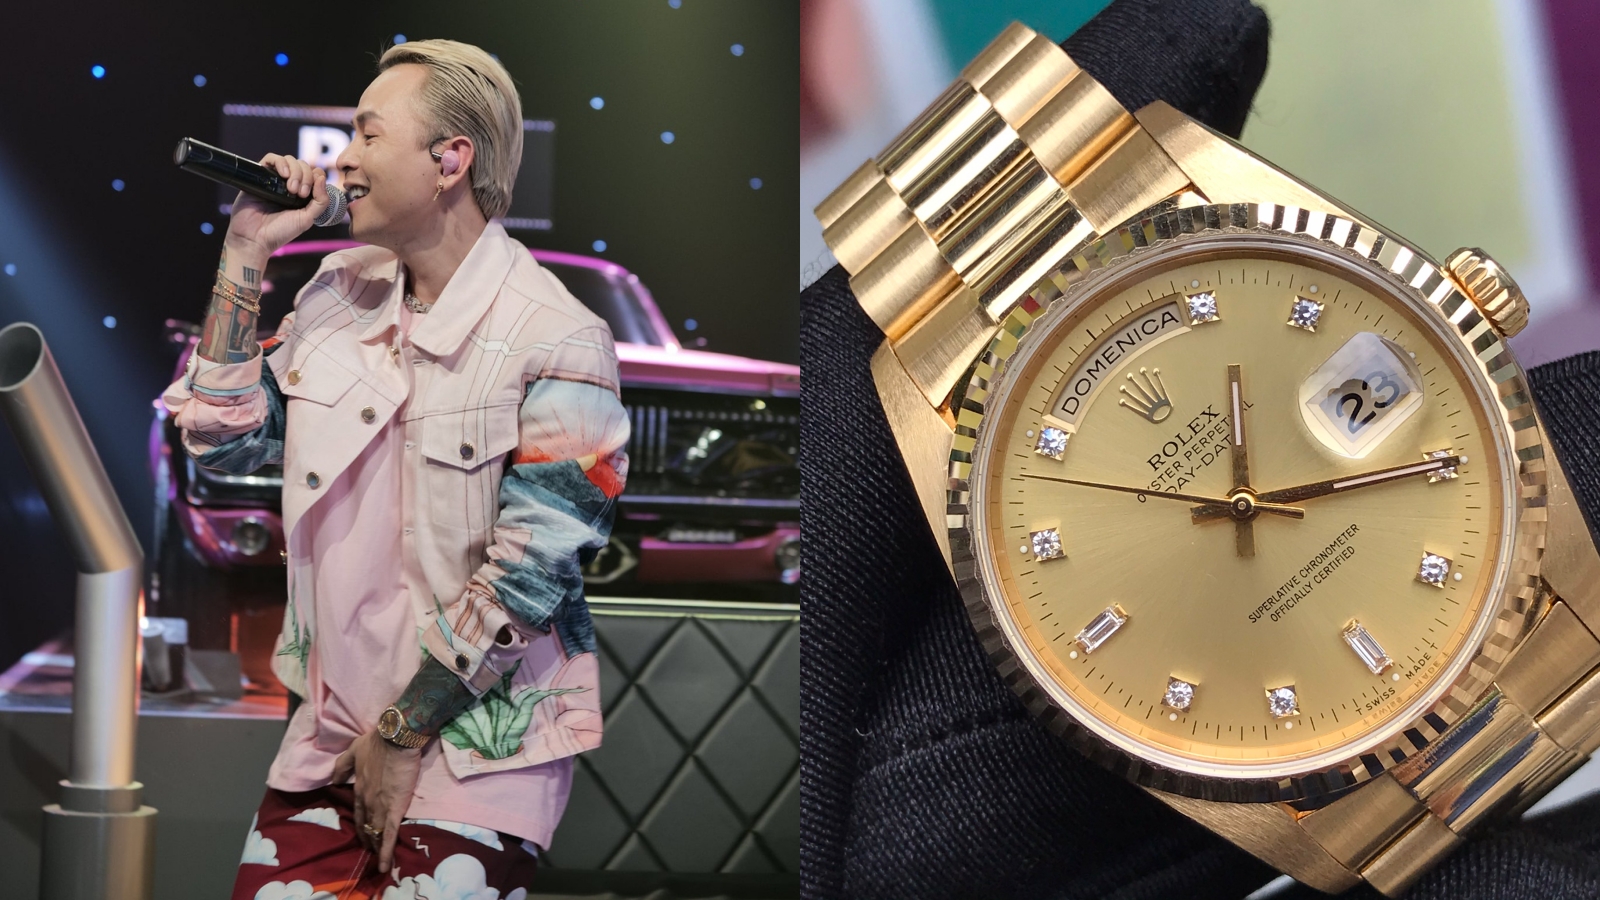 Rolex 18238 từng được Binz ưu ái xuất hiện cùng trong MV Bigcityboi, được làm từ vàng nguyên khối 18k, tô điểm thêm những chi tiết bằng kim cương và đá quý đắt giá tại vành bezel và mặt số đồng hồ, thật sự nổi bật và xa hoa. Trên thị trường, chiếc đồng hồ này được bán với giá 17.000 USD.